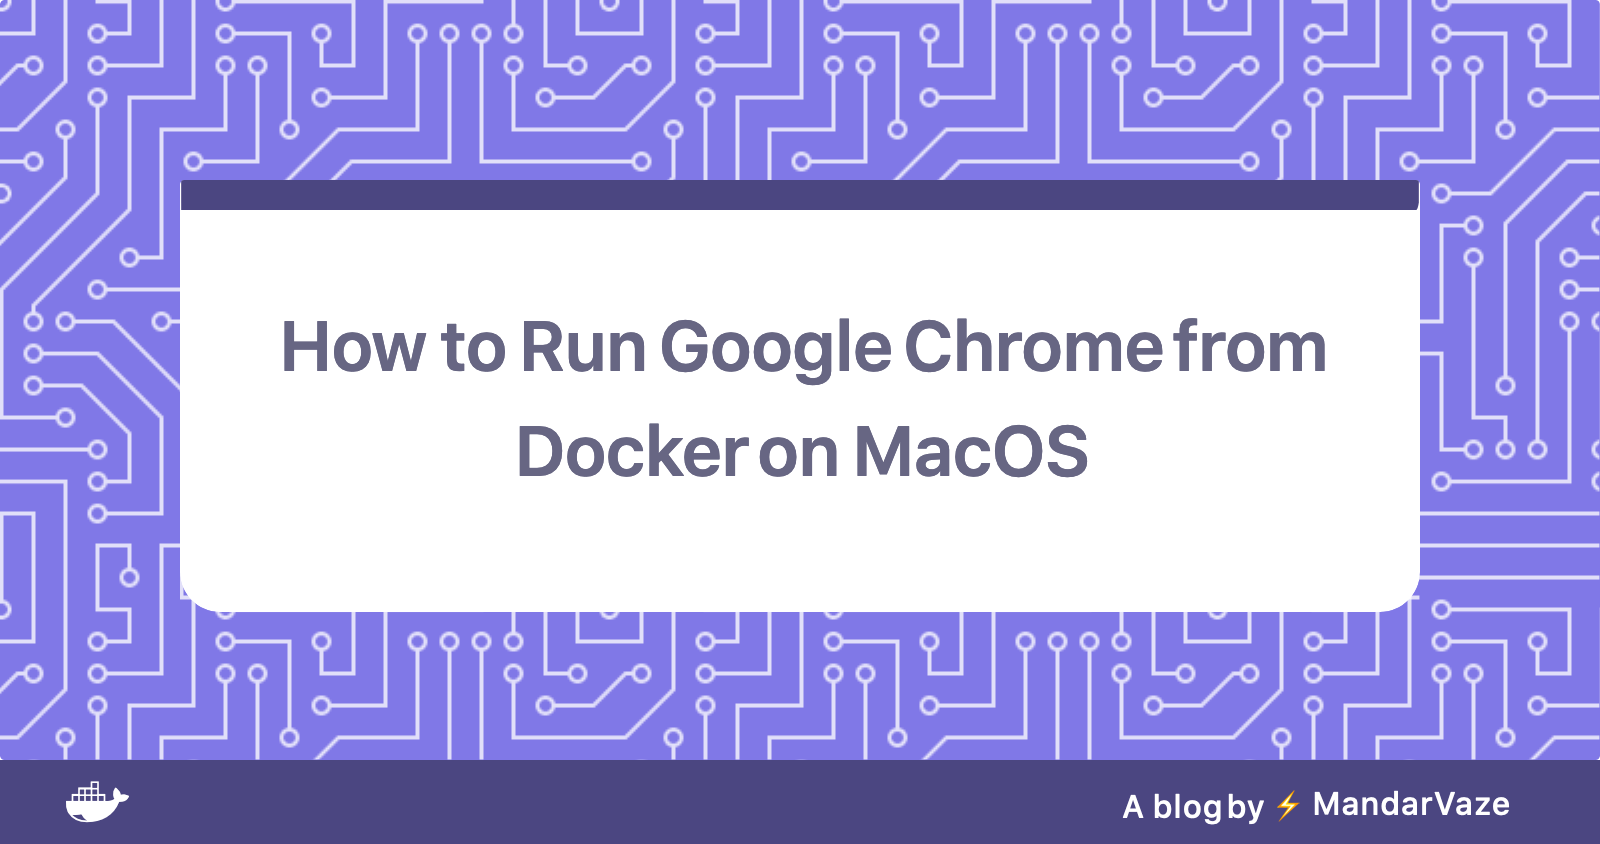 Chrome from Docker